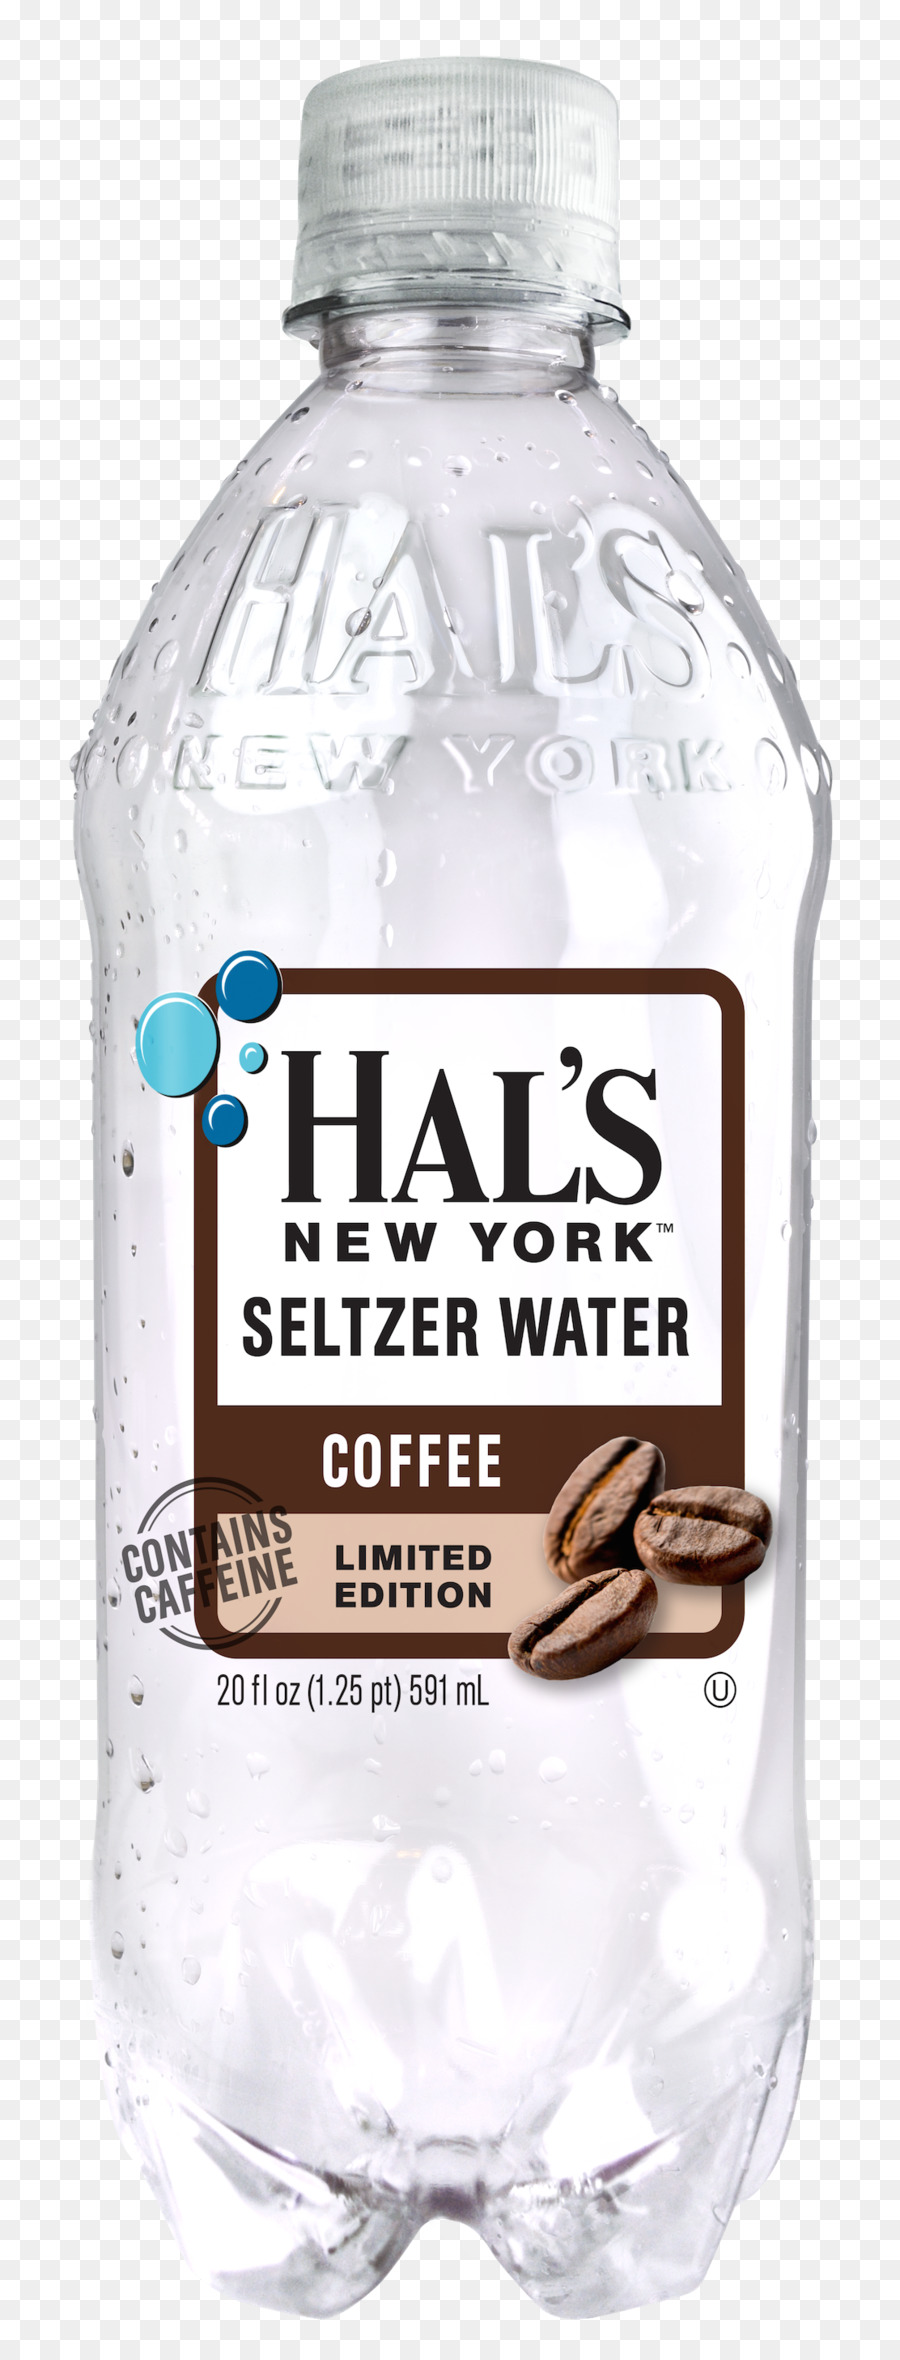 Trinkwasser, Original New York Seltzer Wasser mit Kohlensäure Kohlensäurehaltige Getränke, Kaffee - Kaffee